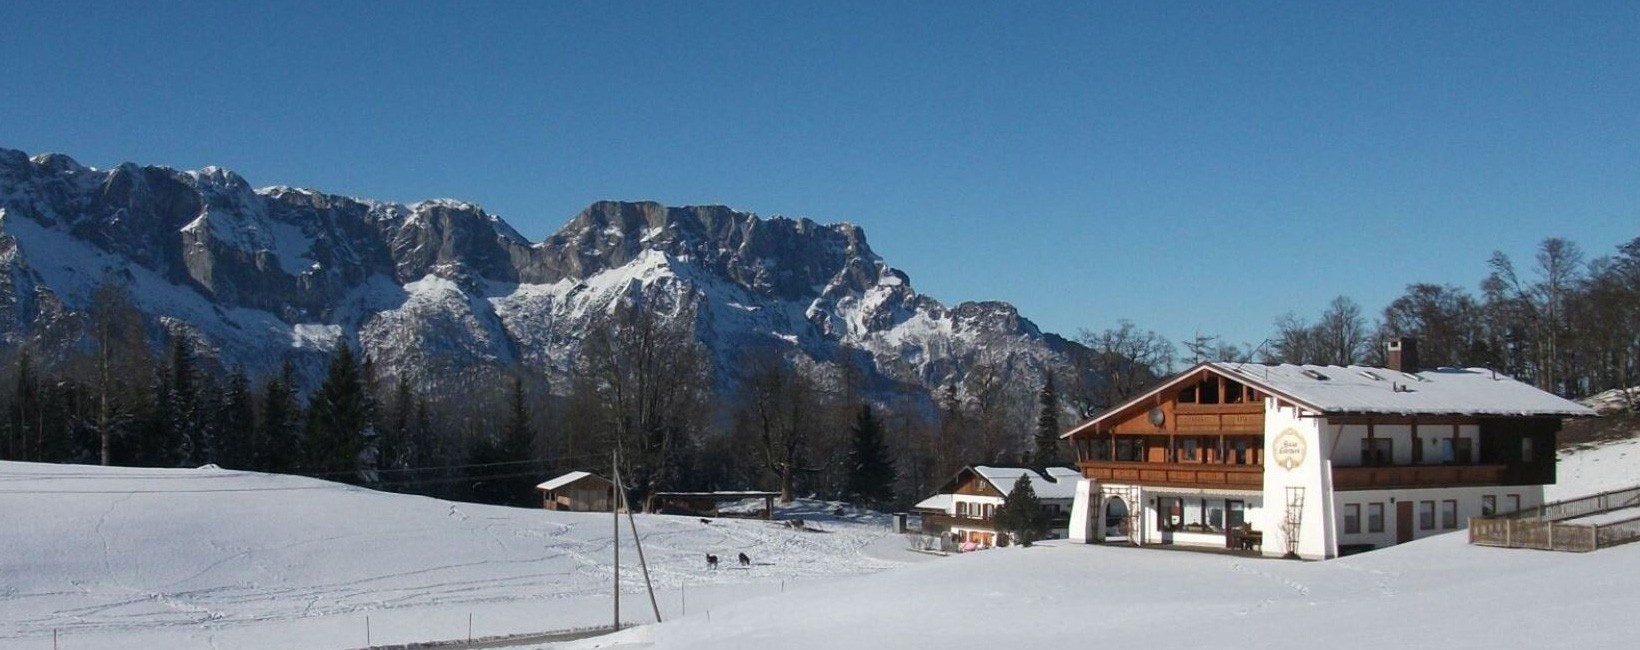 Feriewohnungen Lärcheck Berchtesgaden Haus im Winter